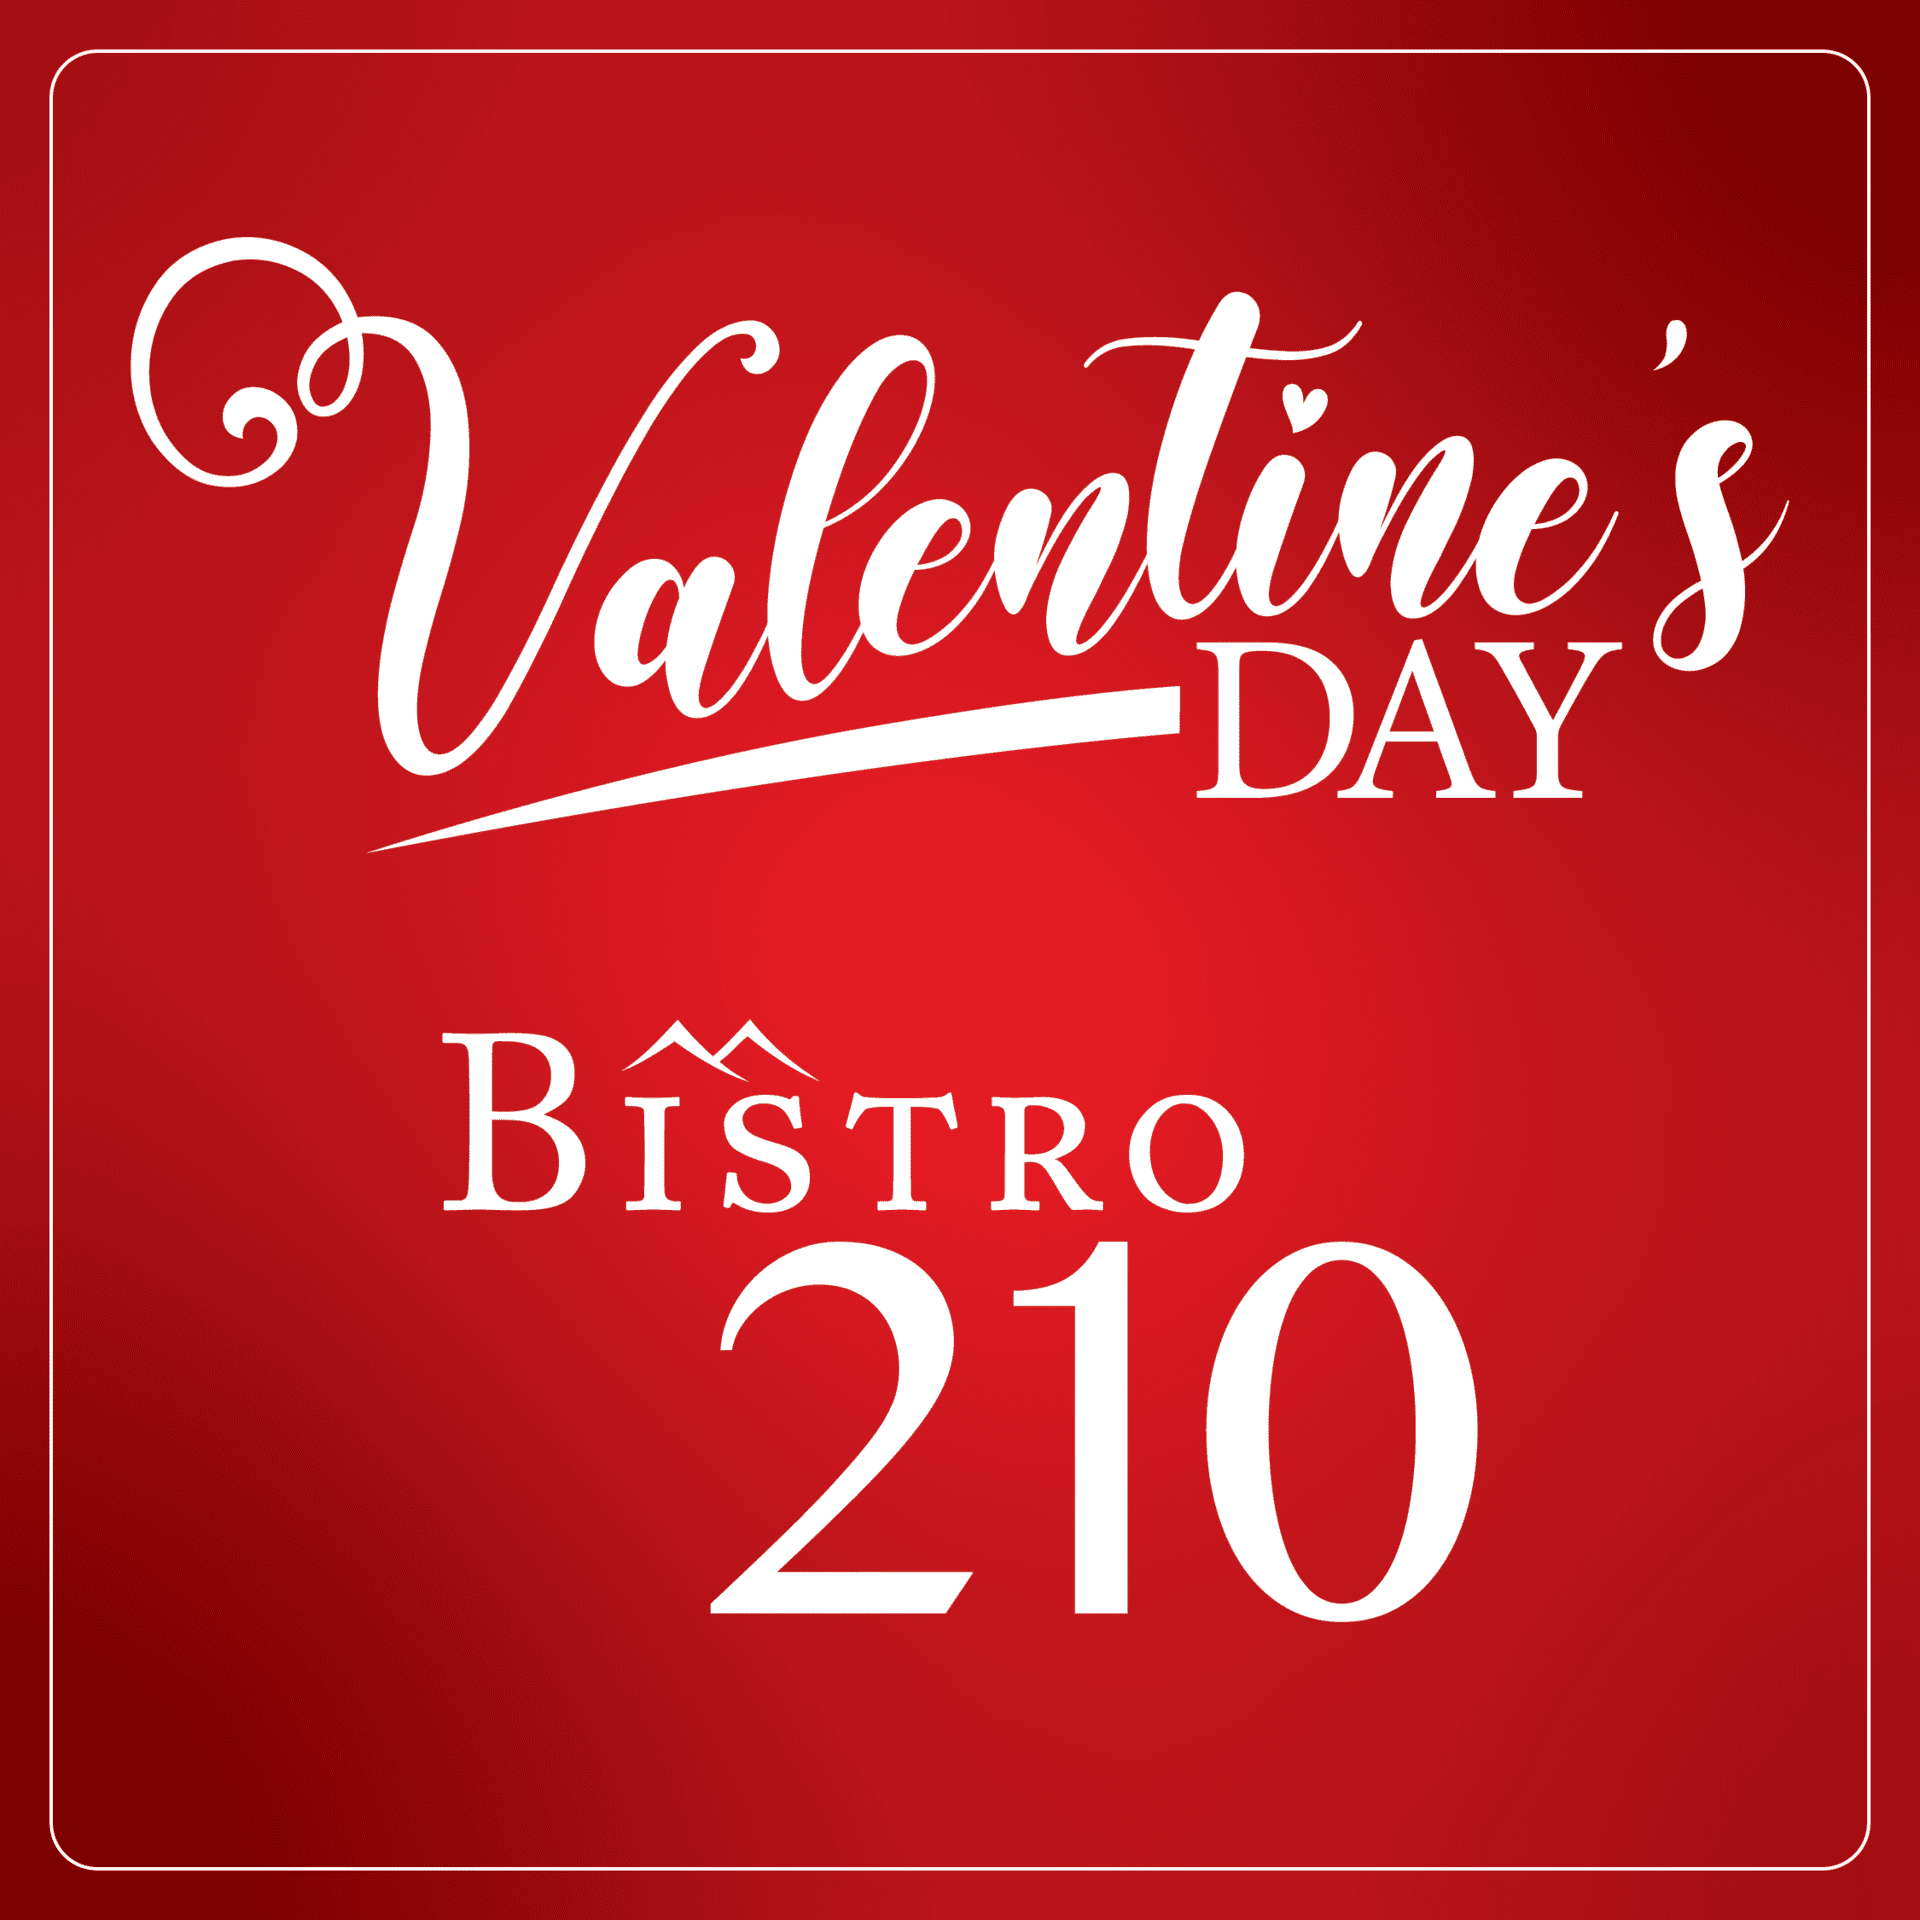 Valentine's Day at Bistro 210 event logo